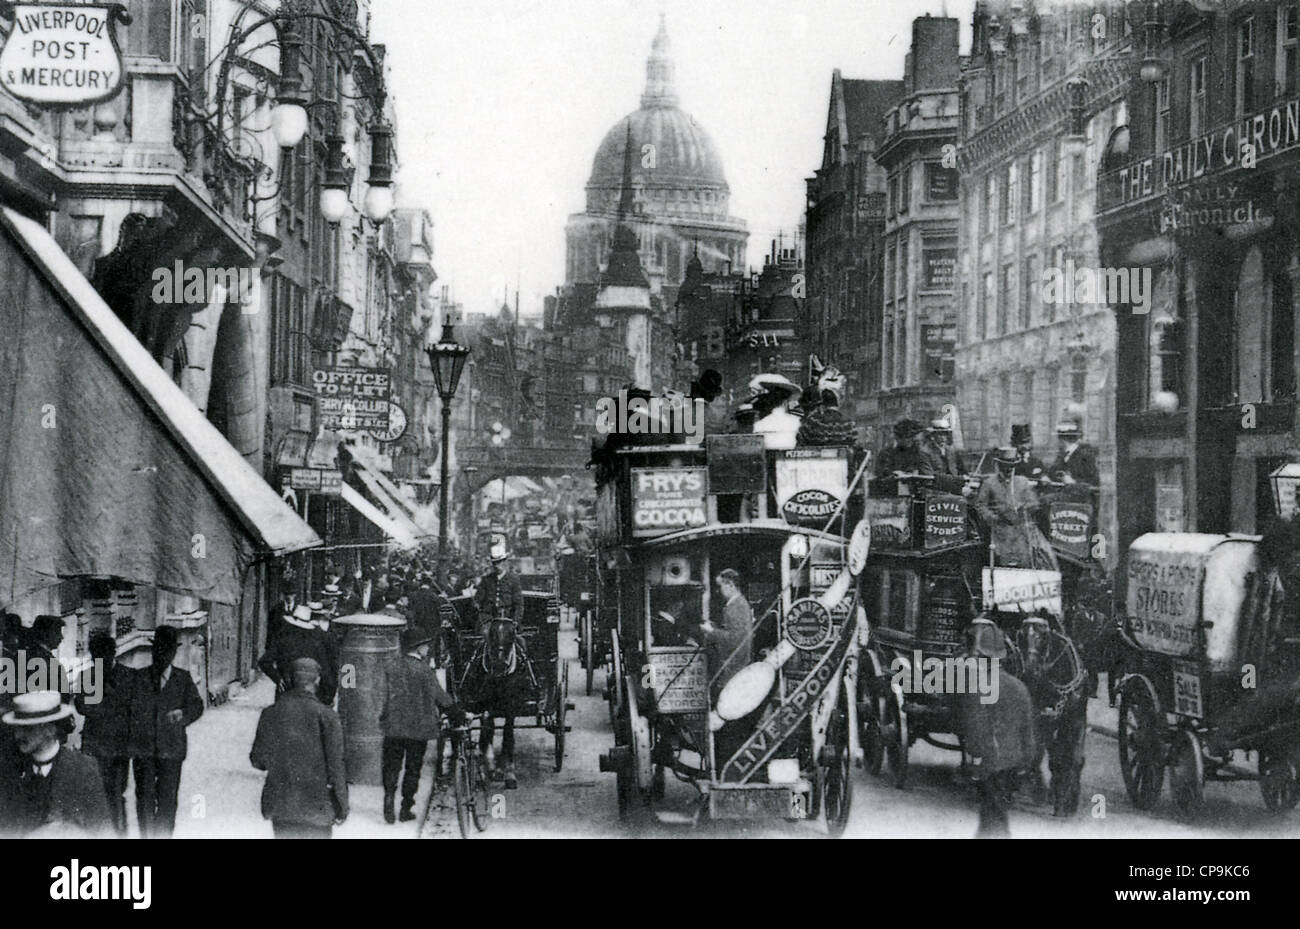 FLEET STREET, London, um 1910. Stockfoto